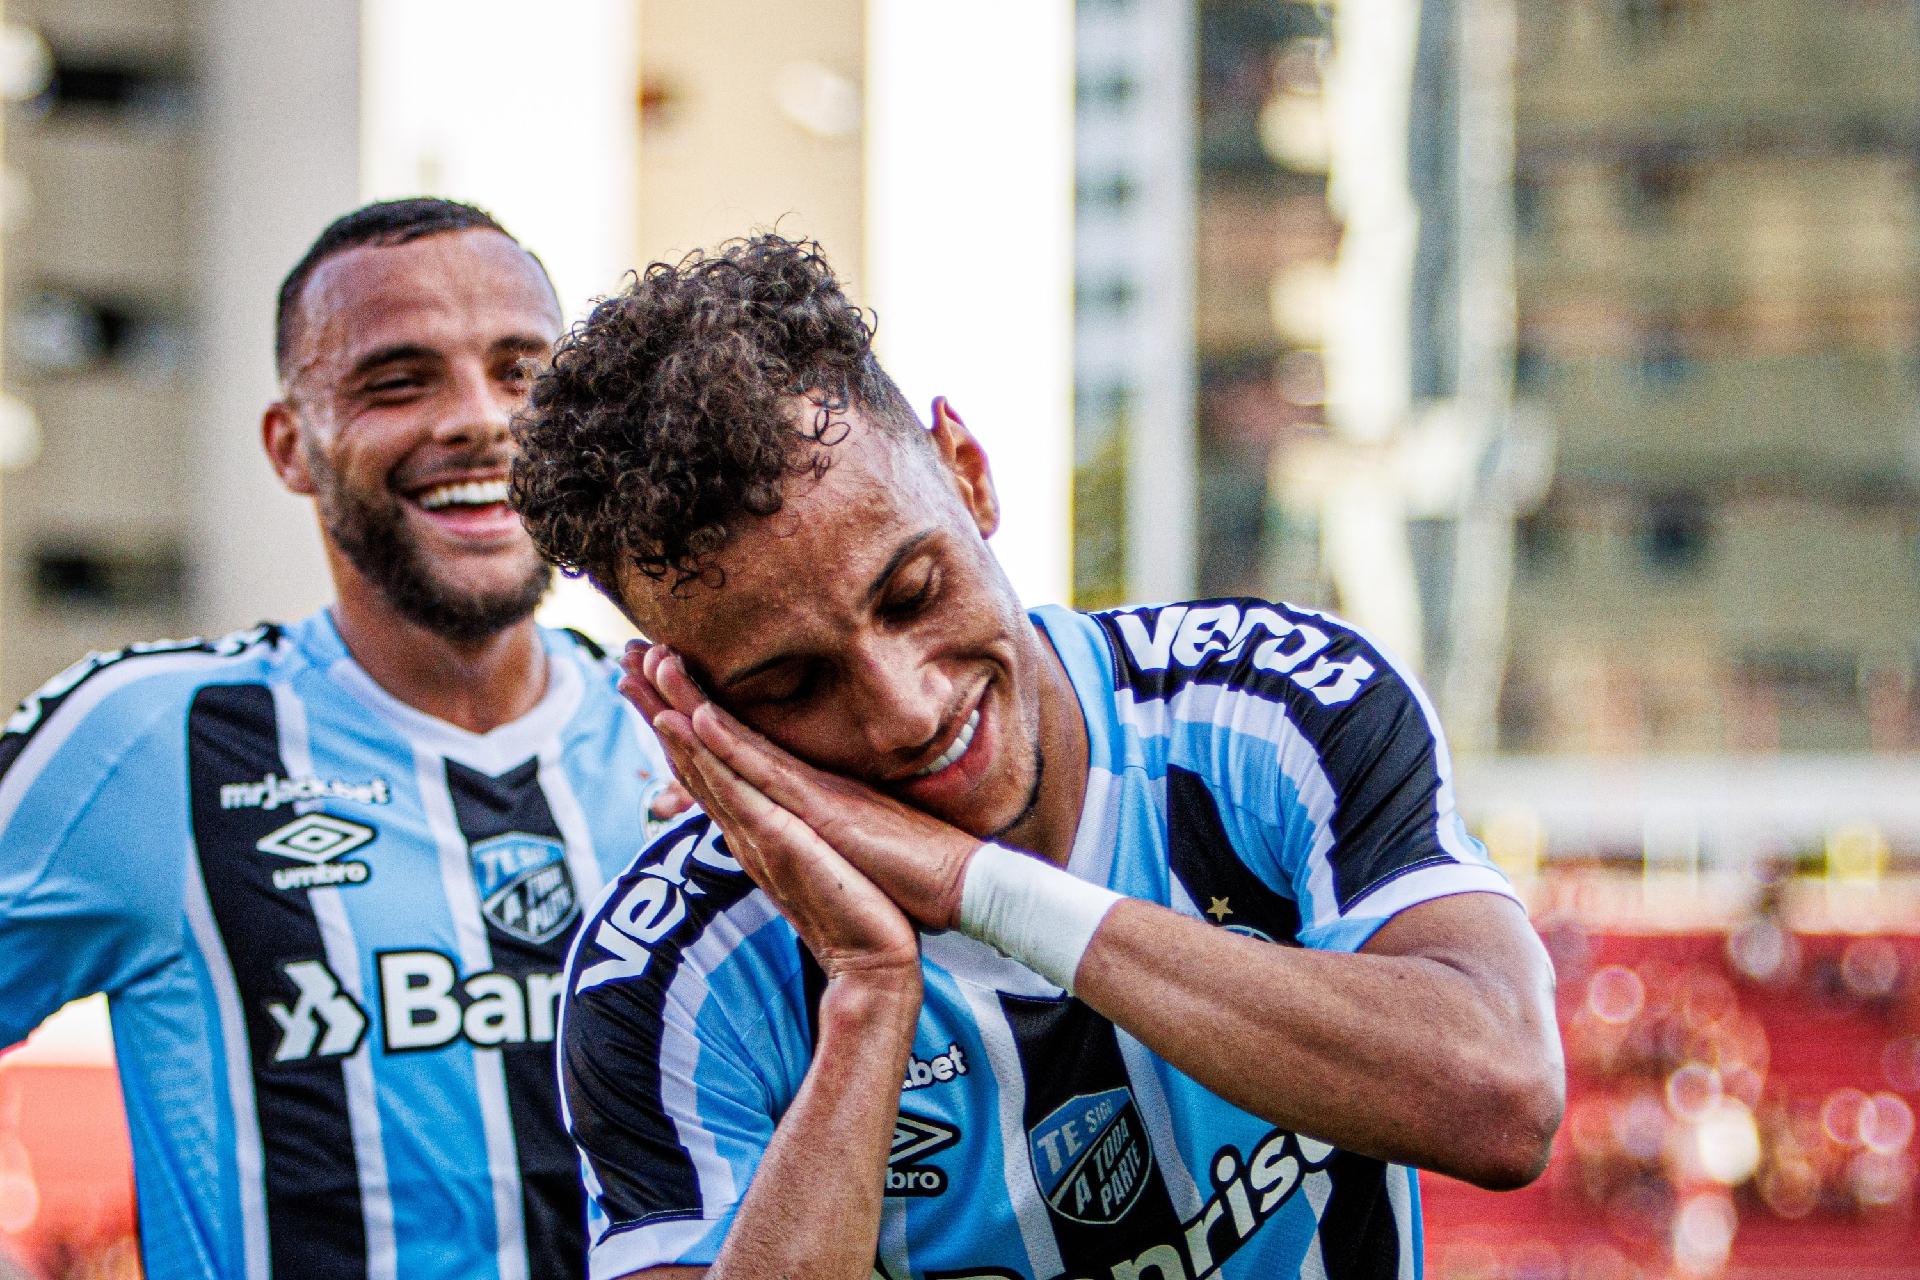 Sport e Grêmio empatam sem gols na briga por vaga no G4 da Série B